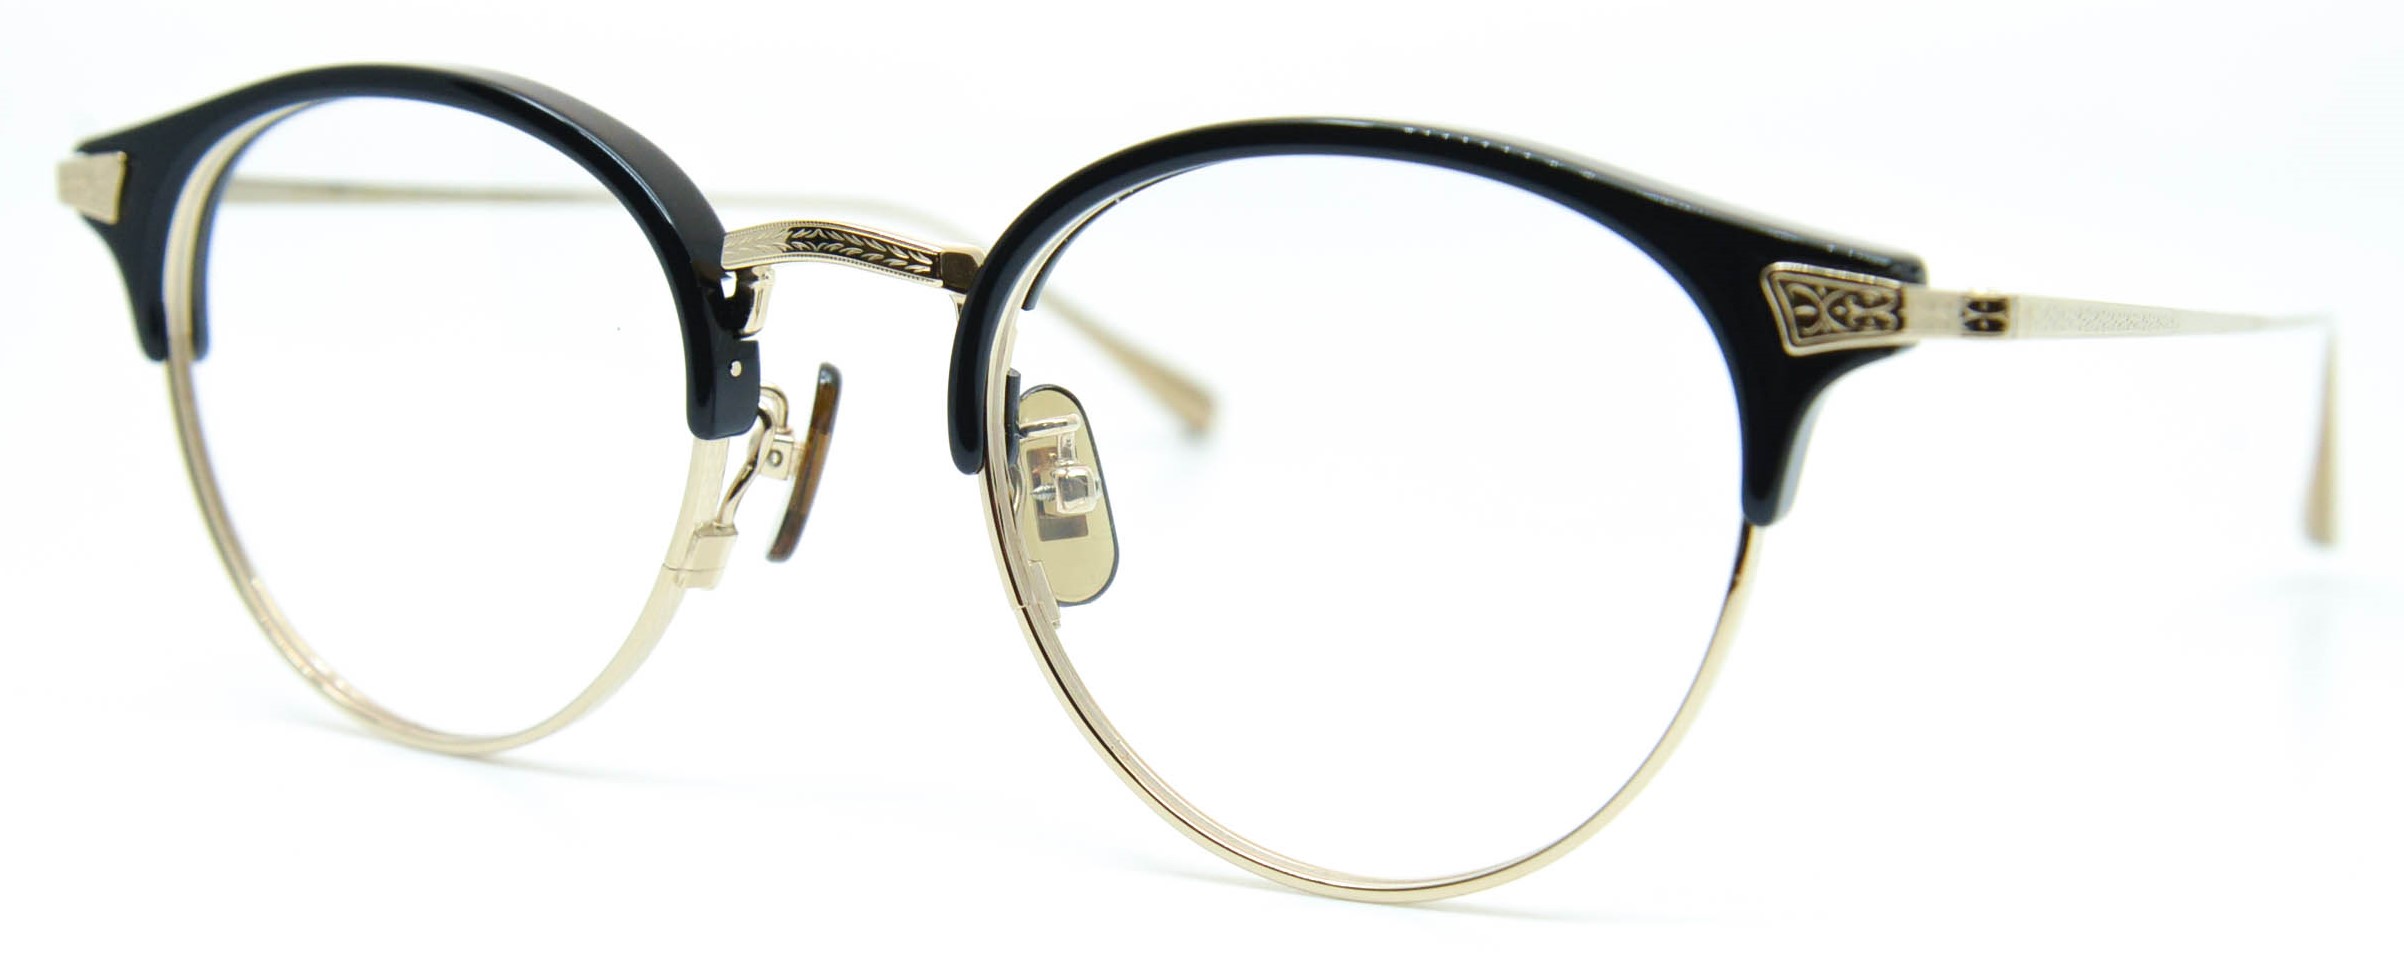 眼鏡のカラータイプC-1 Black/Gold